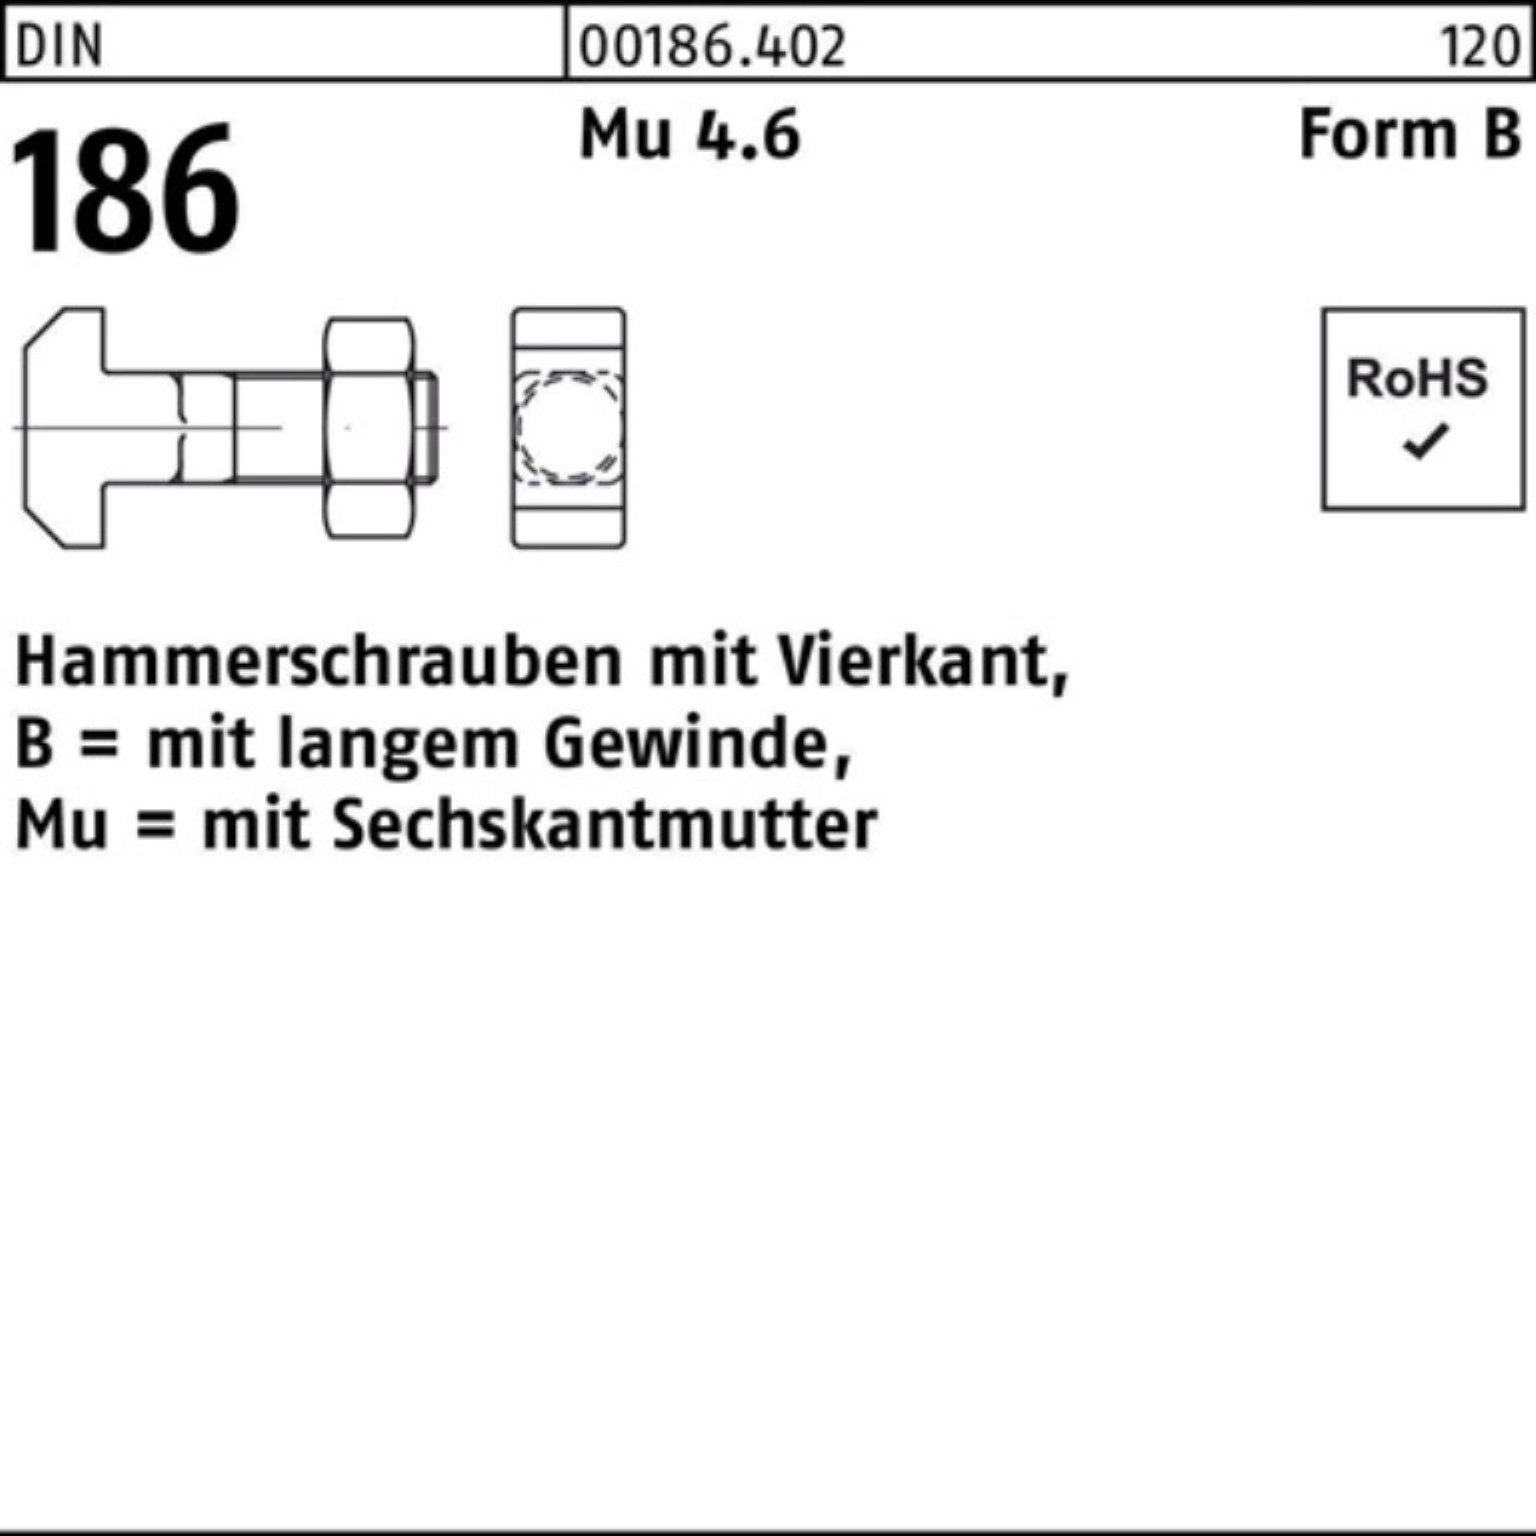 Reyher Schraube 100er Pack Hammerschraube DIN 186 FormB Vierkant 6-ktmutter BM 8x 30 M